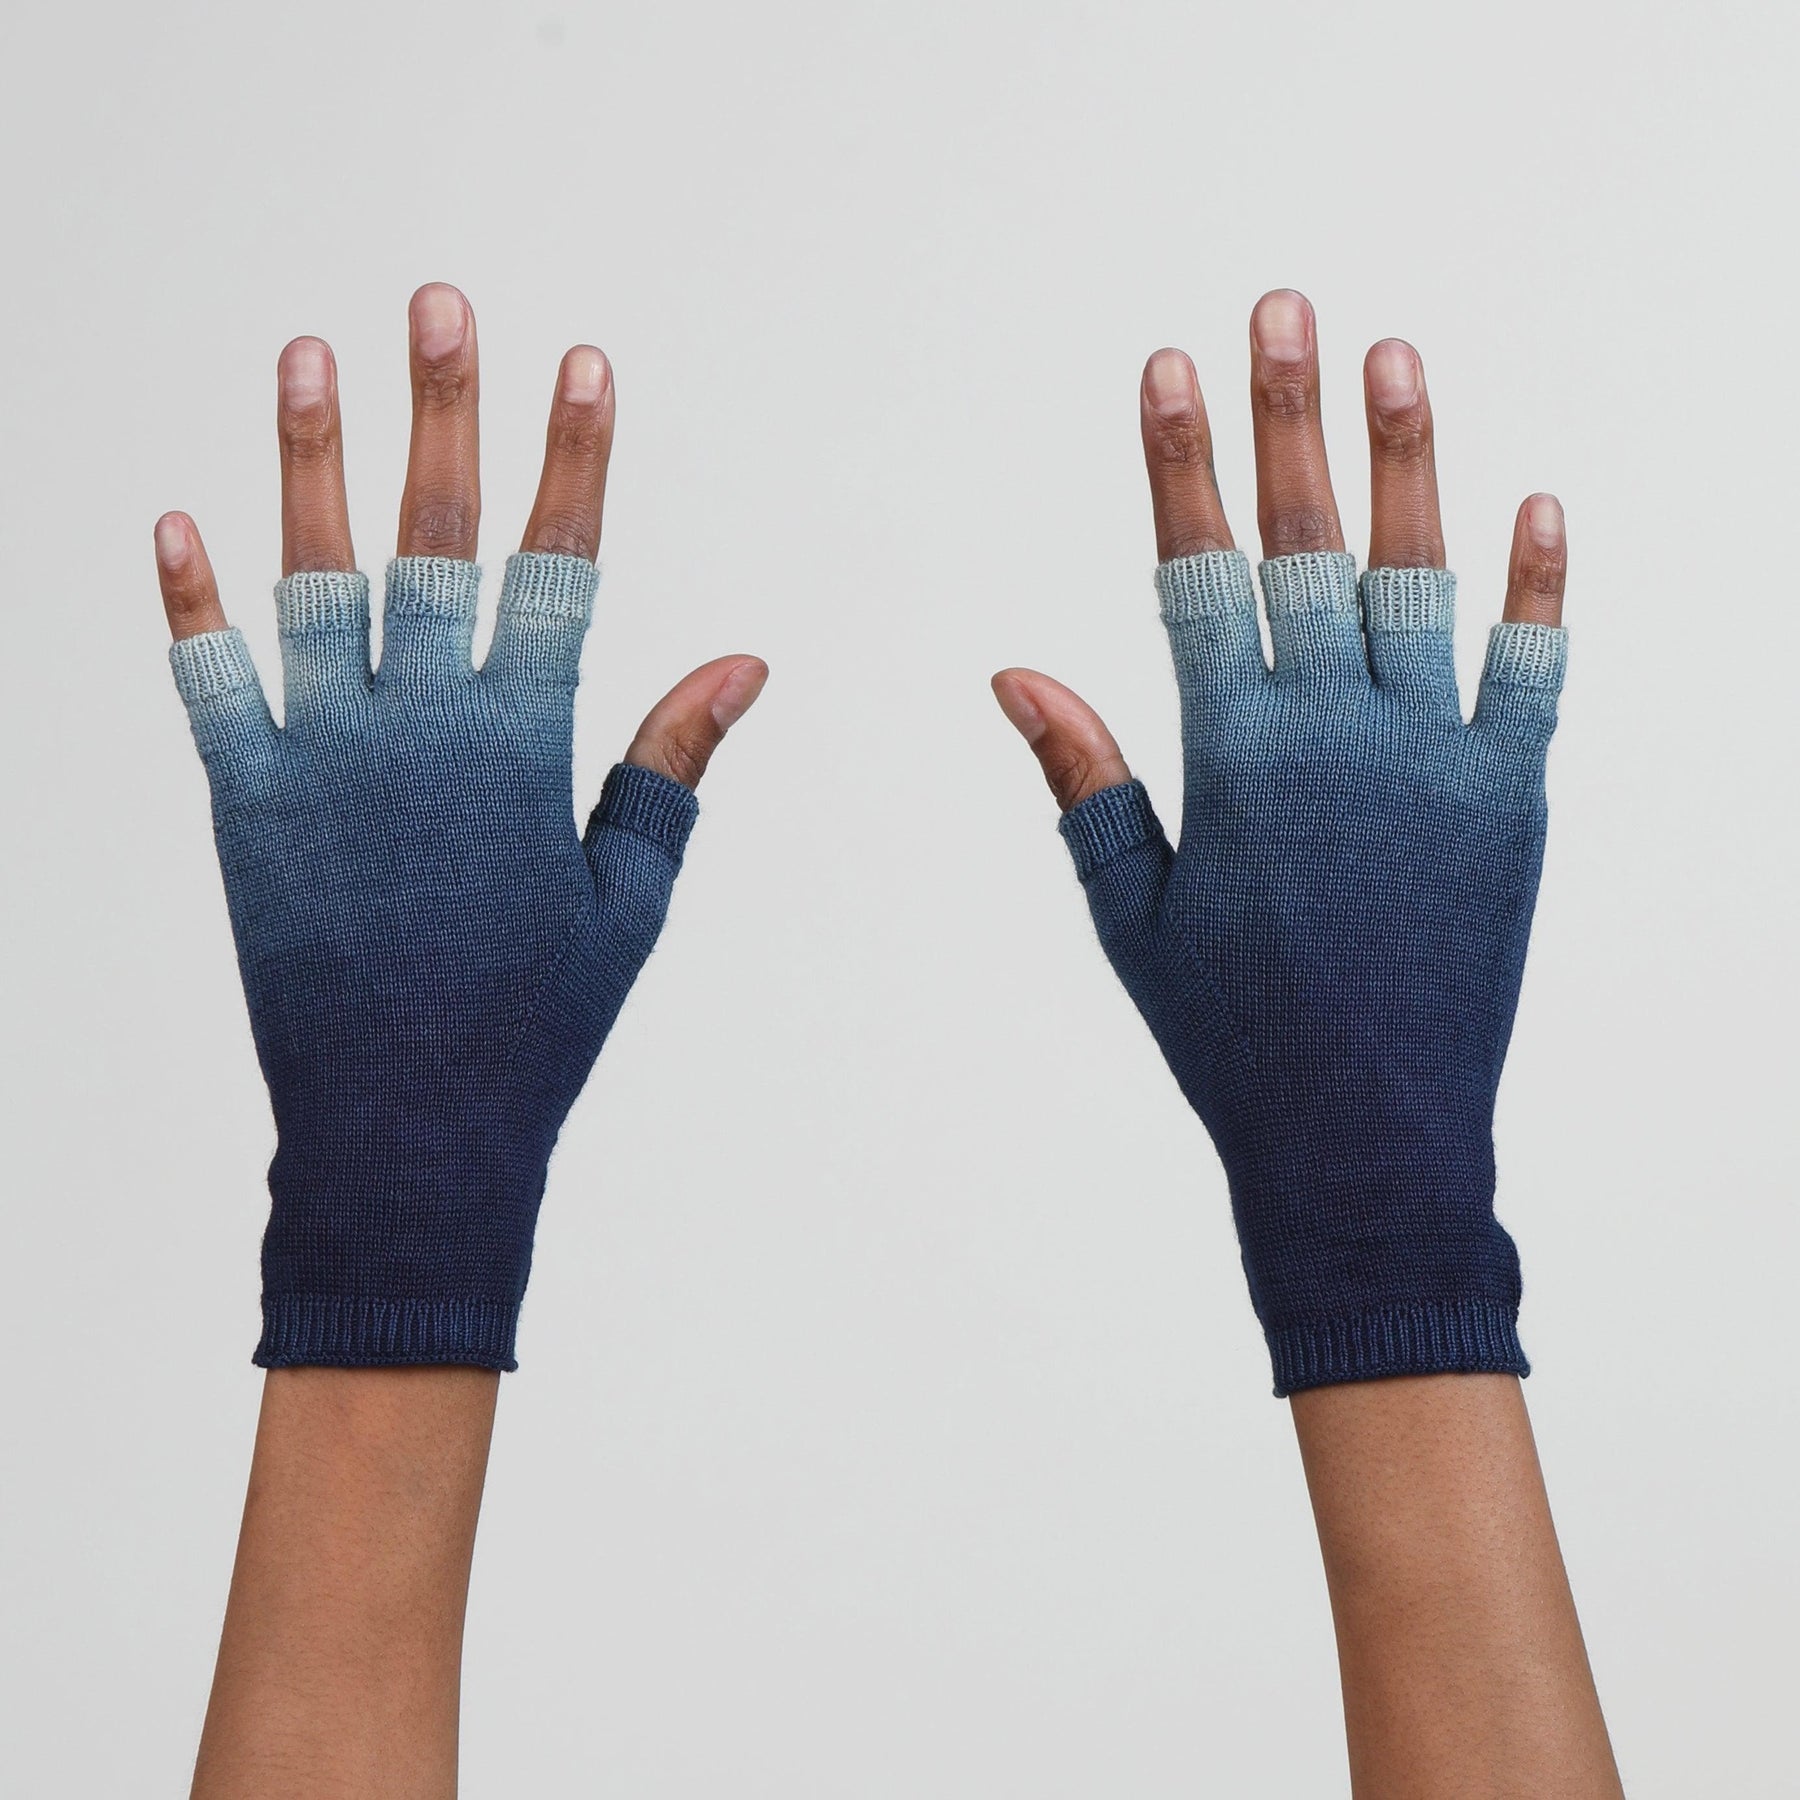 Blue Dip Dye Fingerless Gloves by Seymoure Gloves.